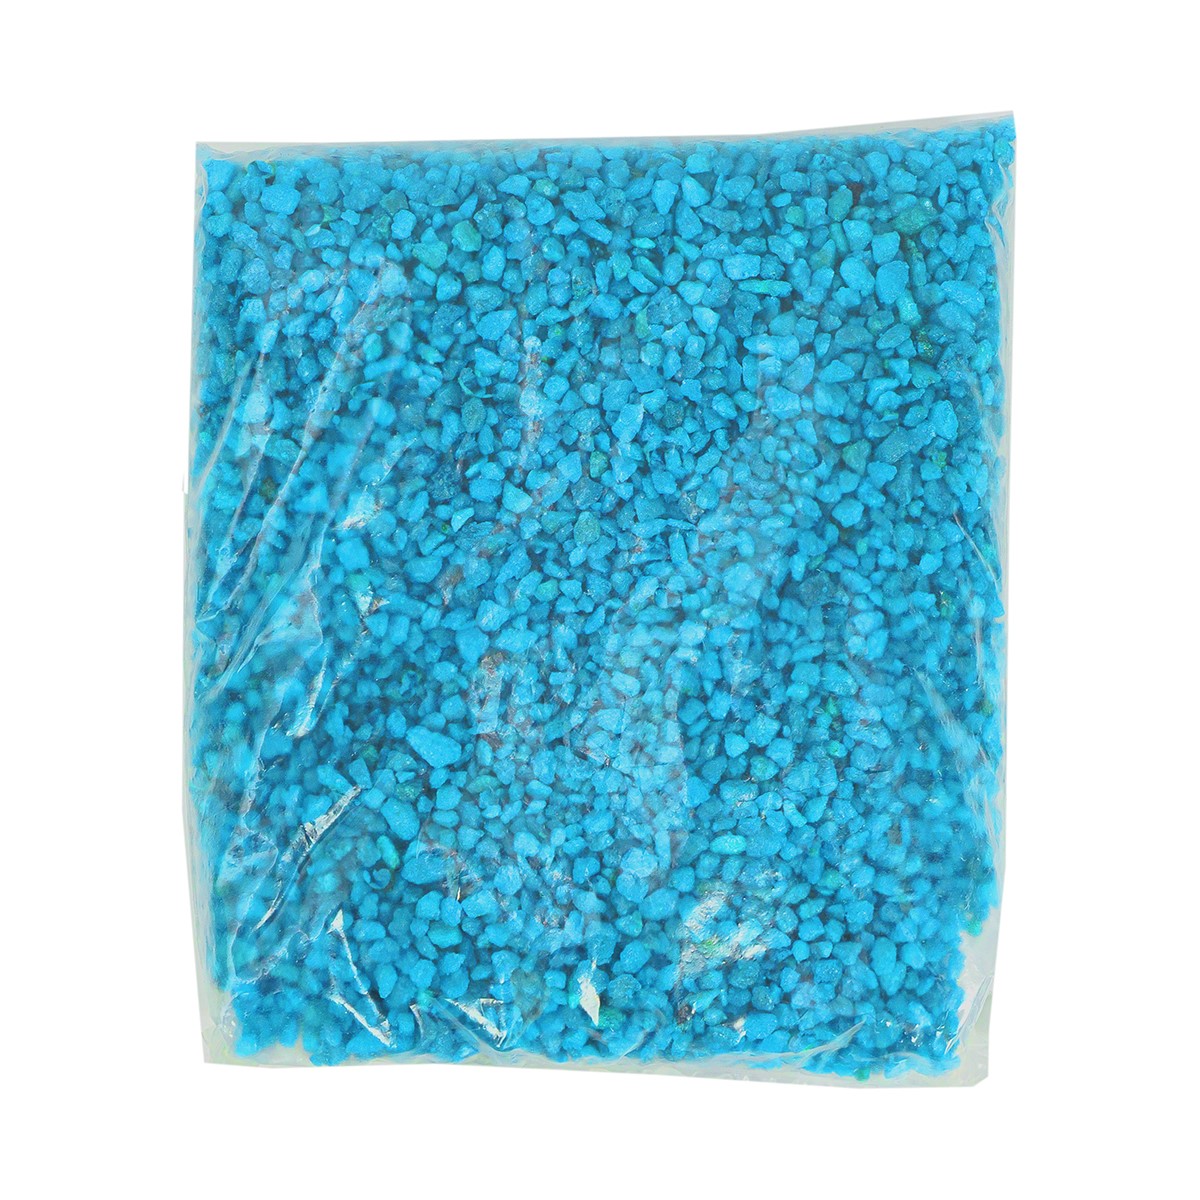 Грунт для аквариума Zoo One Голубой, натуральный камень, фракция 2-5 мм, 1 кг